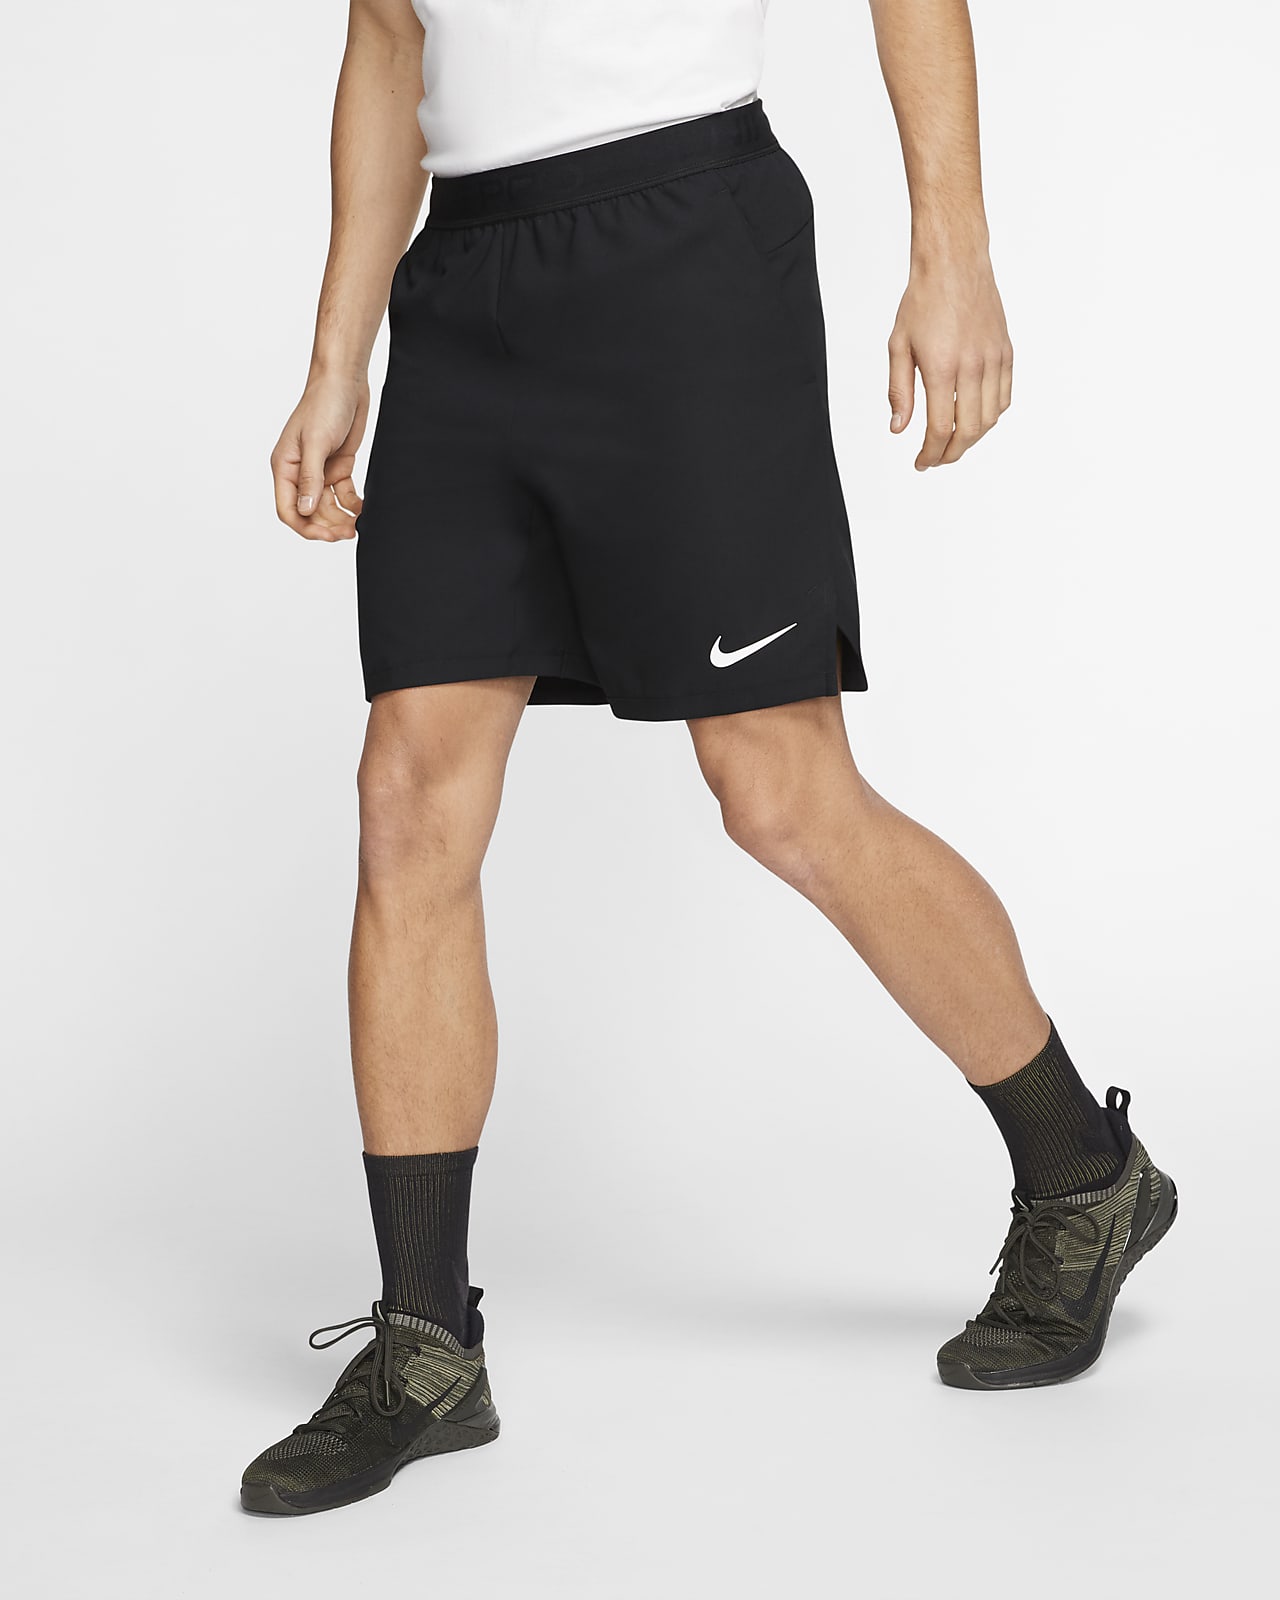 Nike Pro Flex Vent Max Men's Shorts. Nike SA